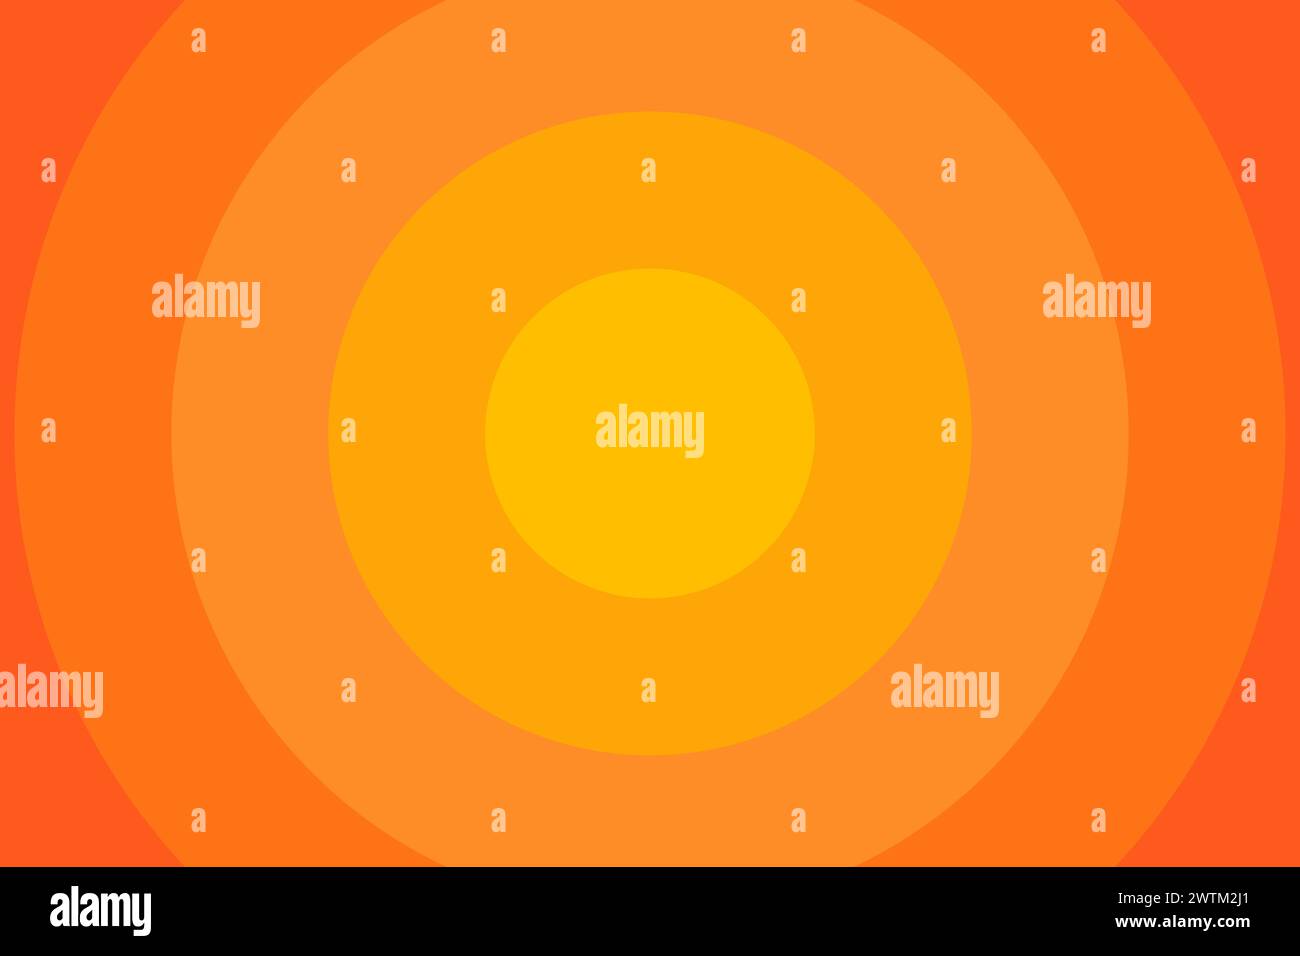 Sfondo dei cerchi concentrici arancioni. Sole, luce solare o alba, sequenza di scoppio del sole. Ondulazioni, impatto, onda sonar, epicentro, segnale radar, sfondo irradiato. Illustrazione piatta vettoriale. Illustrazione Vettoriale